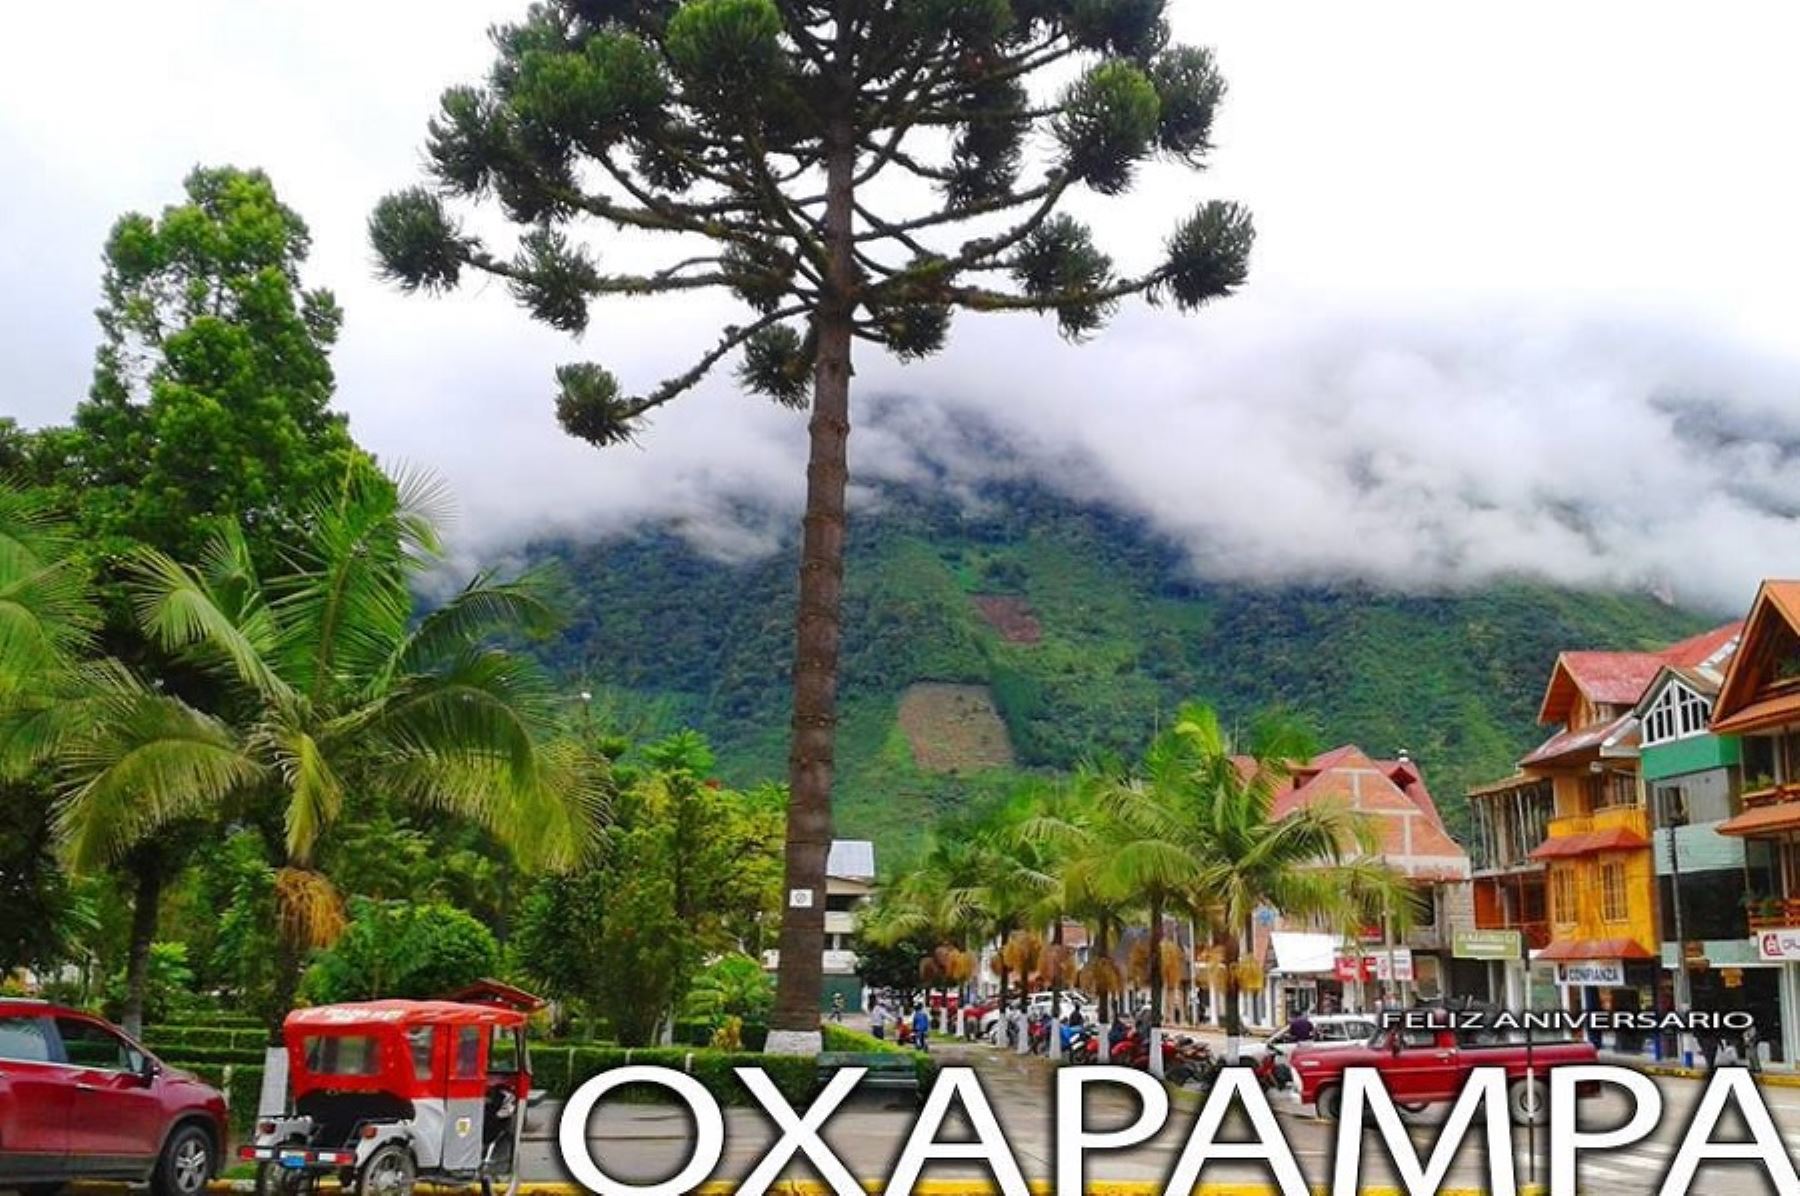 Este martes 30 de agosto, la ciudad de Oxapampa celebrará su 131 aniversario de fundación y la festividad central en honor a su patrona Santa Rosa de Lima